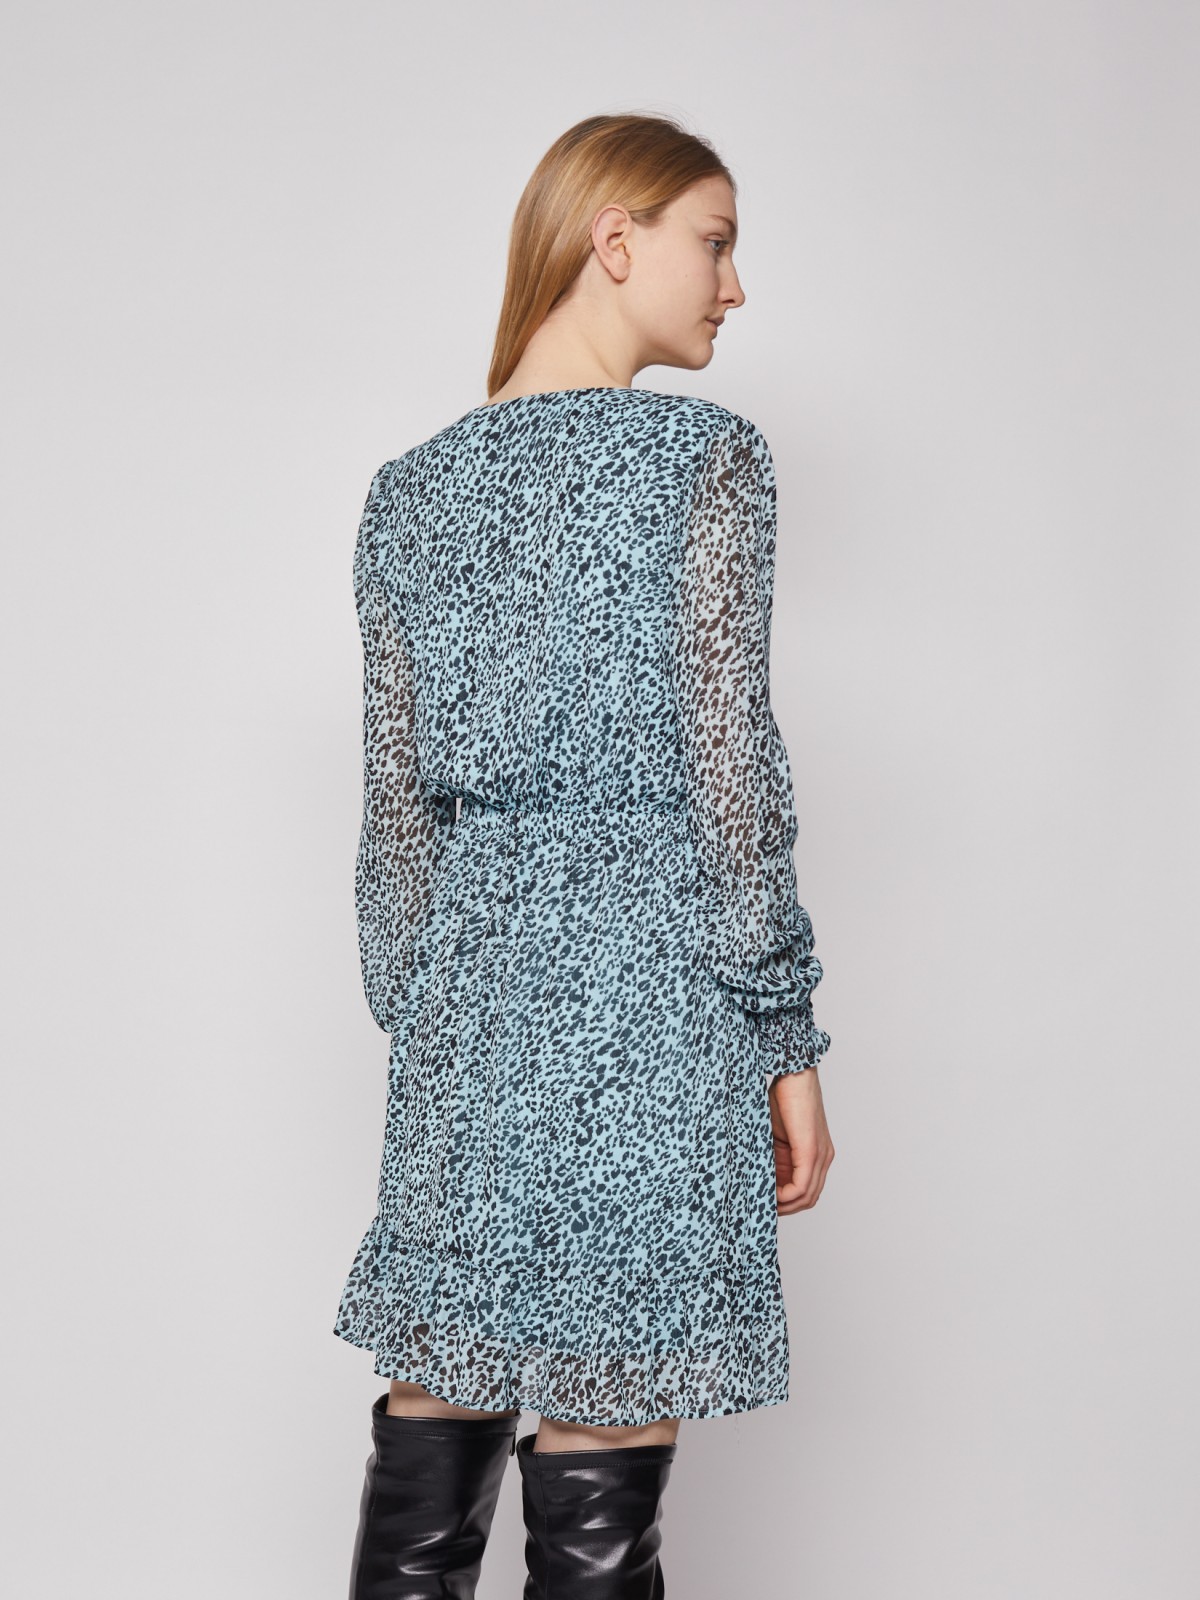 Шифоновое платье с леопардовым принтом zolla 02213824Y183, цвет мятный, размер XS - фото 6